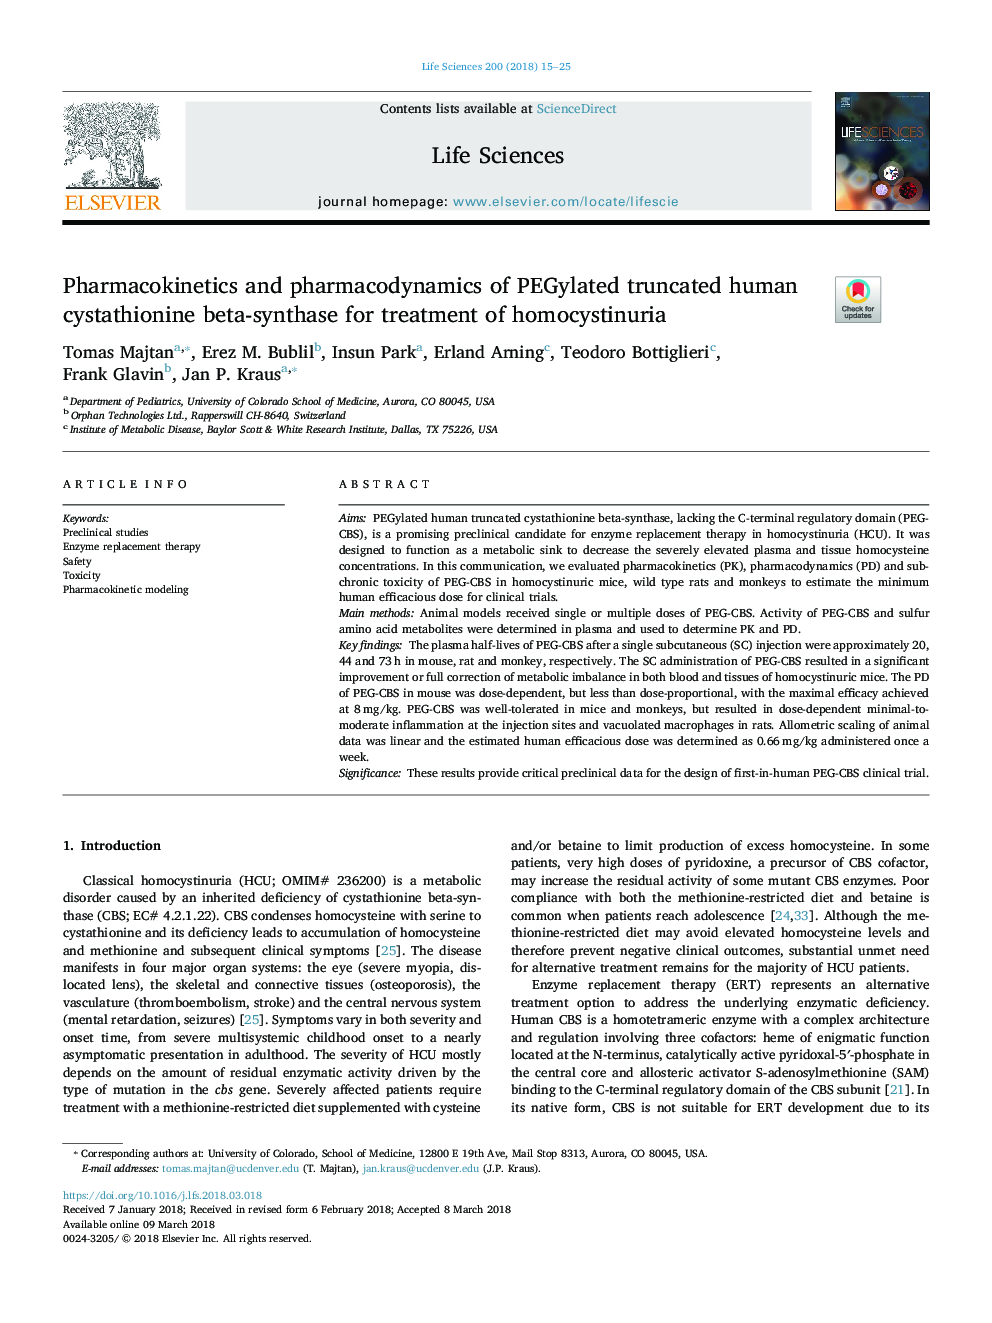 Pharmacokinetics and pharmacodynamics of PEGylated truncated human cystathionine beta-synthase for treatment of homocystinuria